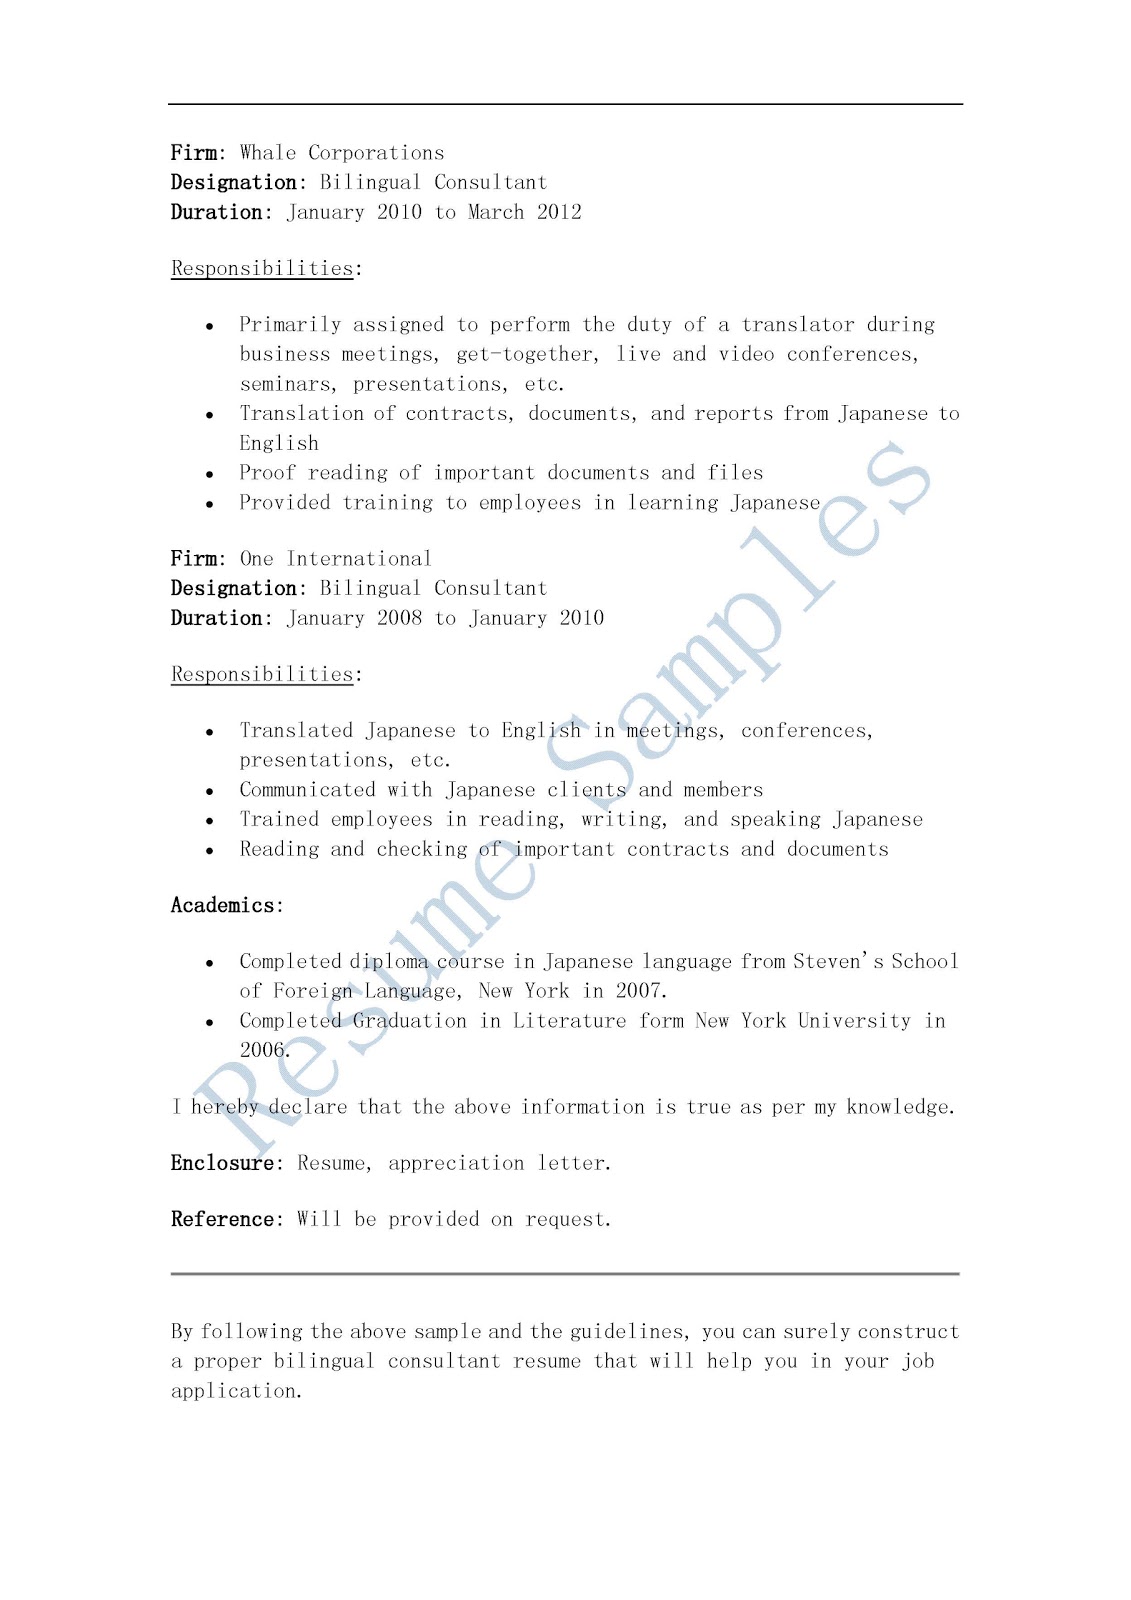 resume samples  bilingual consultant resume